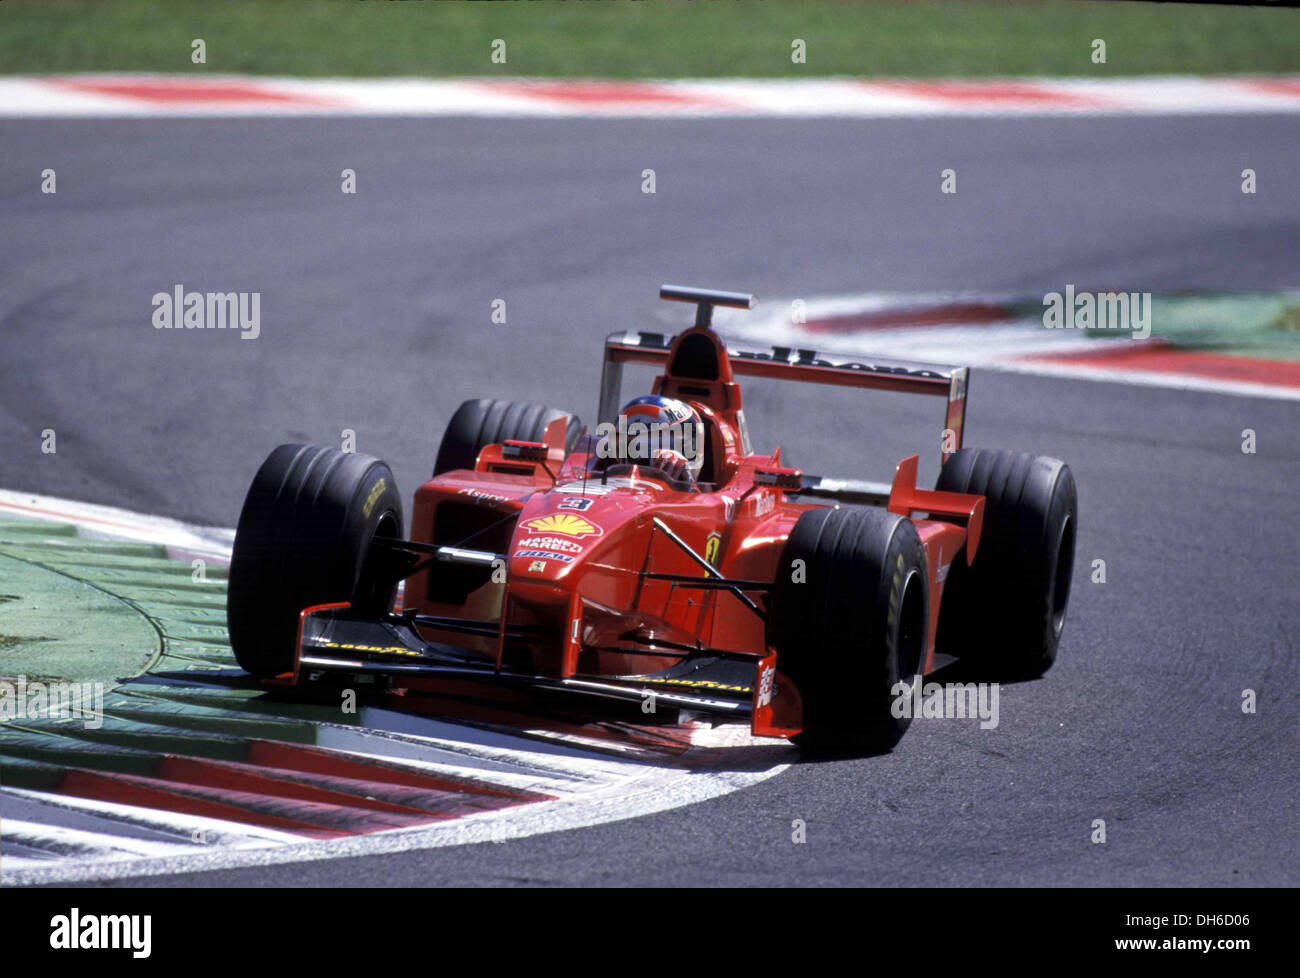 Michael Schumacher in a Ferrari F300 at the Italian GP, Monza, Italy 1998. Stock Photo